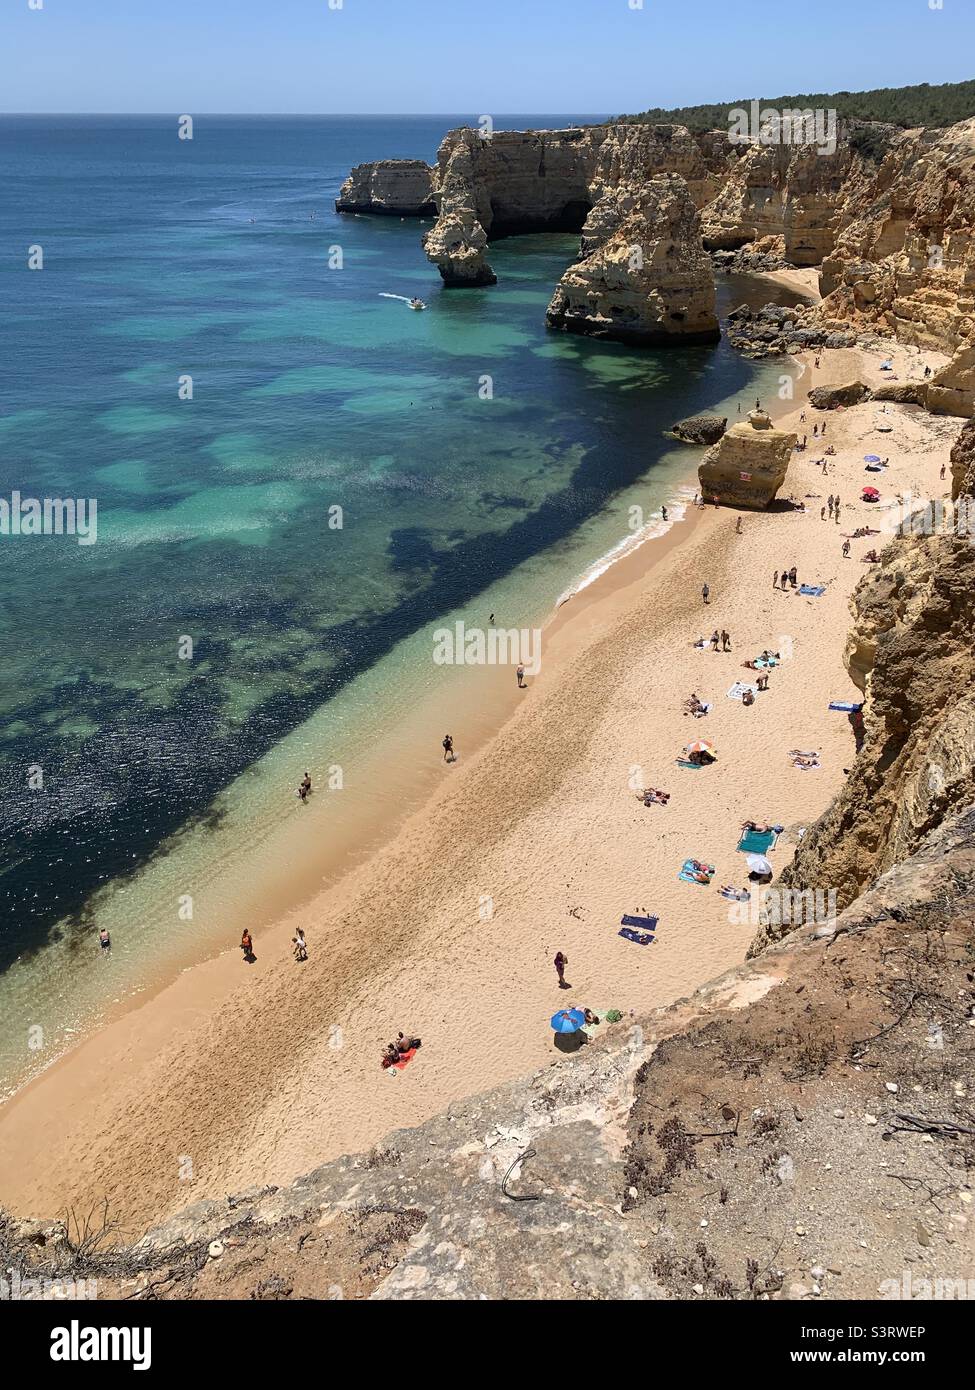 Aerial view of Praia da Marinha Portugal Stock Photo